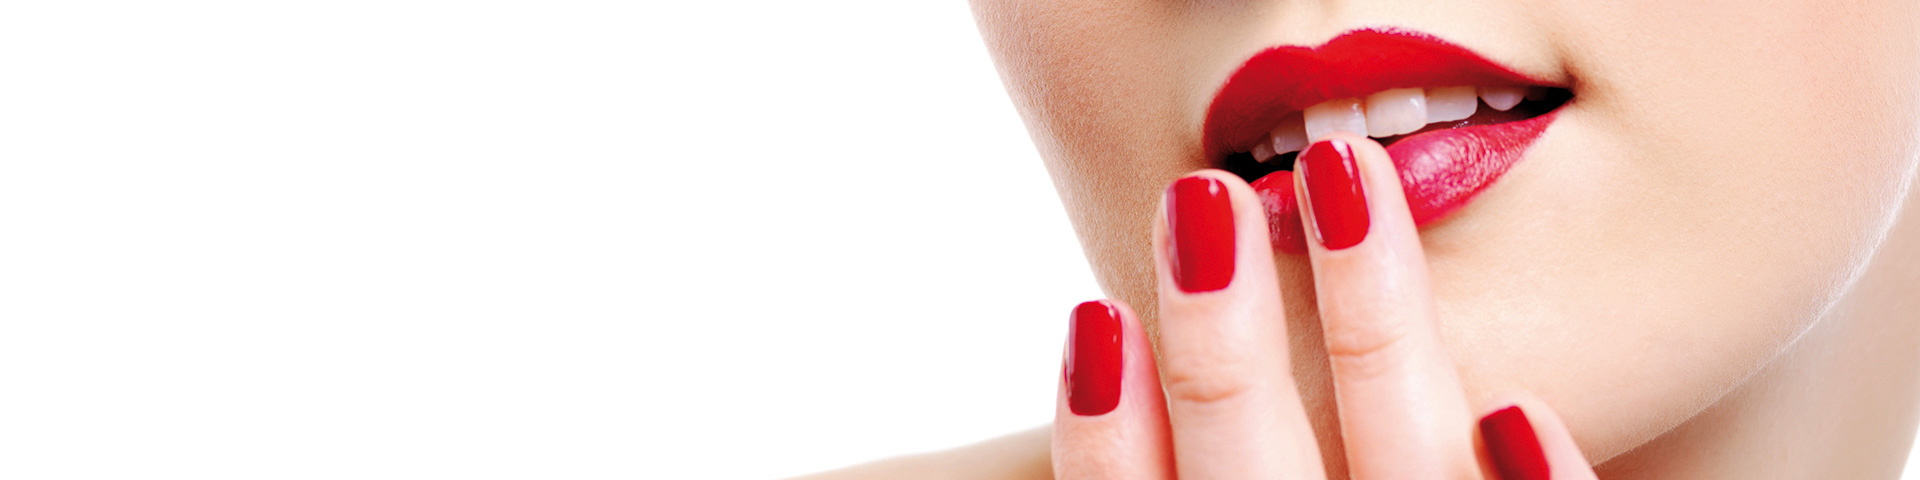 Maniküre - Finger mit rot lackierten Nägel greifen zu den Lippen, die die selbe rote Farbe haben